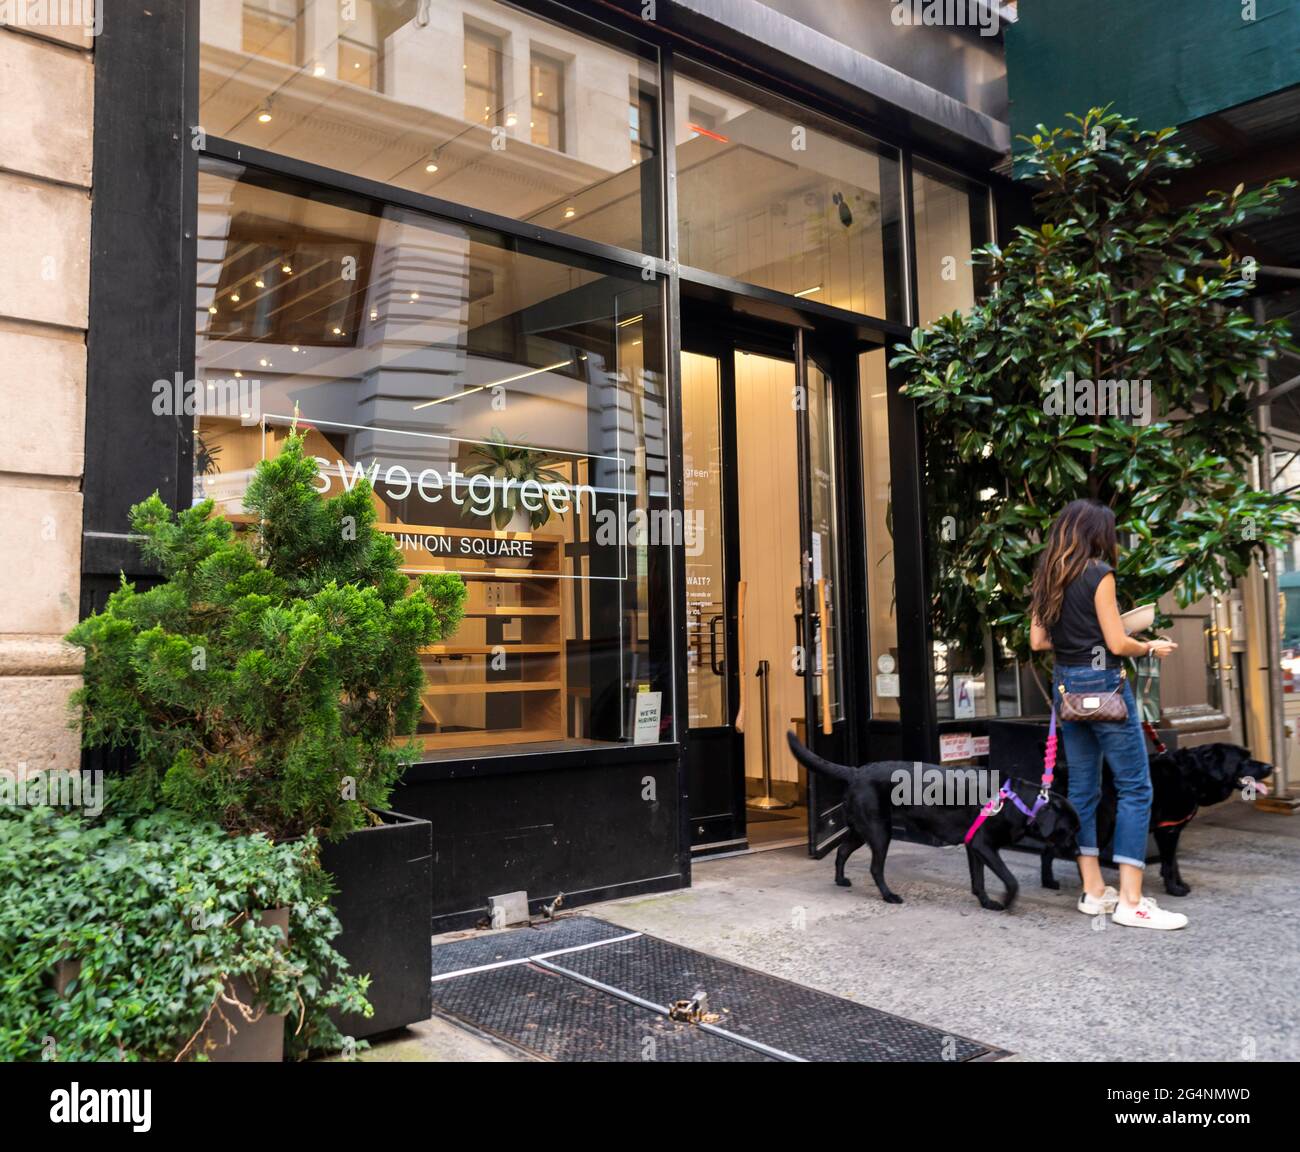 Un restaurant Sweetgreen dans le quartier Union Square de New York le lundi 21 juin 2021. Sweetgreen a été déclaré avoir déposé pour un premier appel d'offres public. (© Richard B. Levine) Banque D'Images